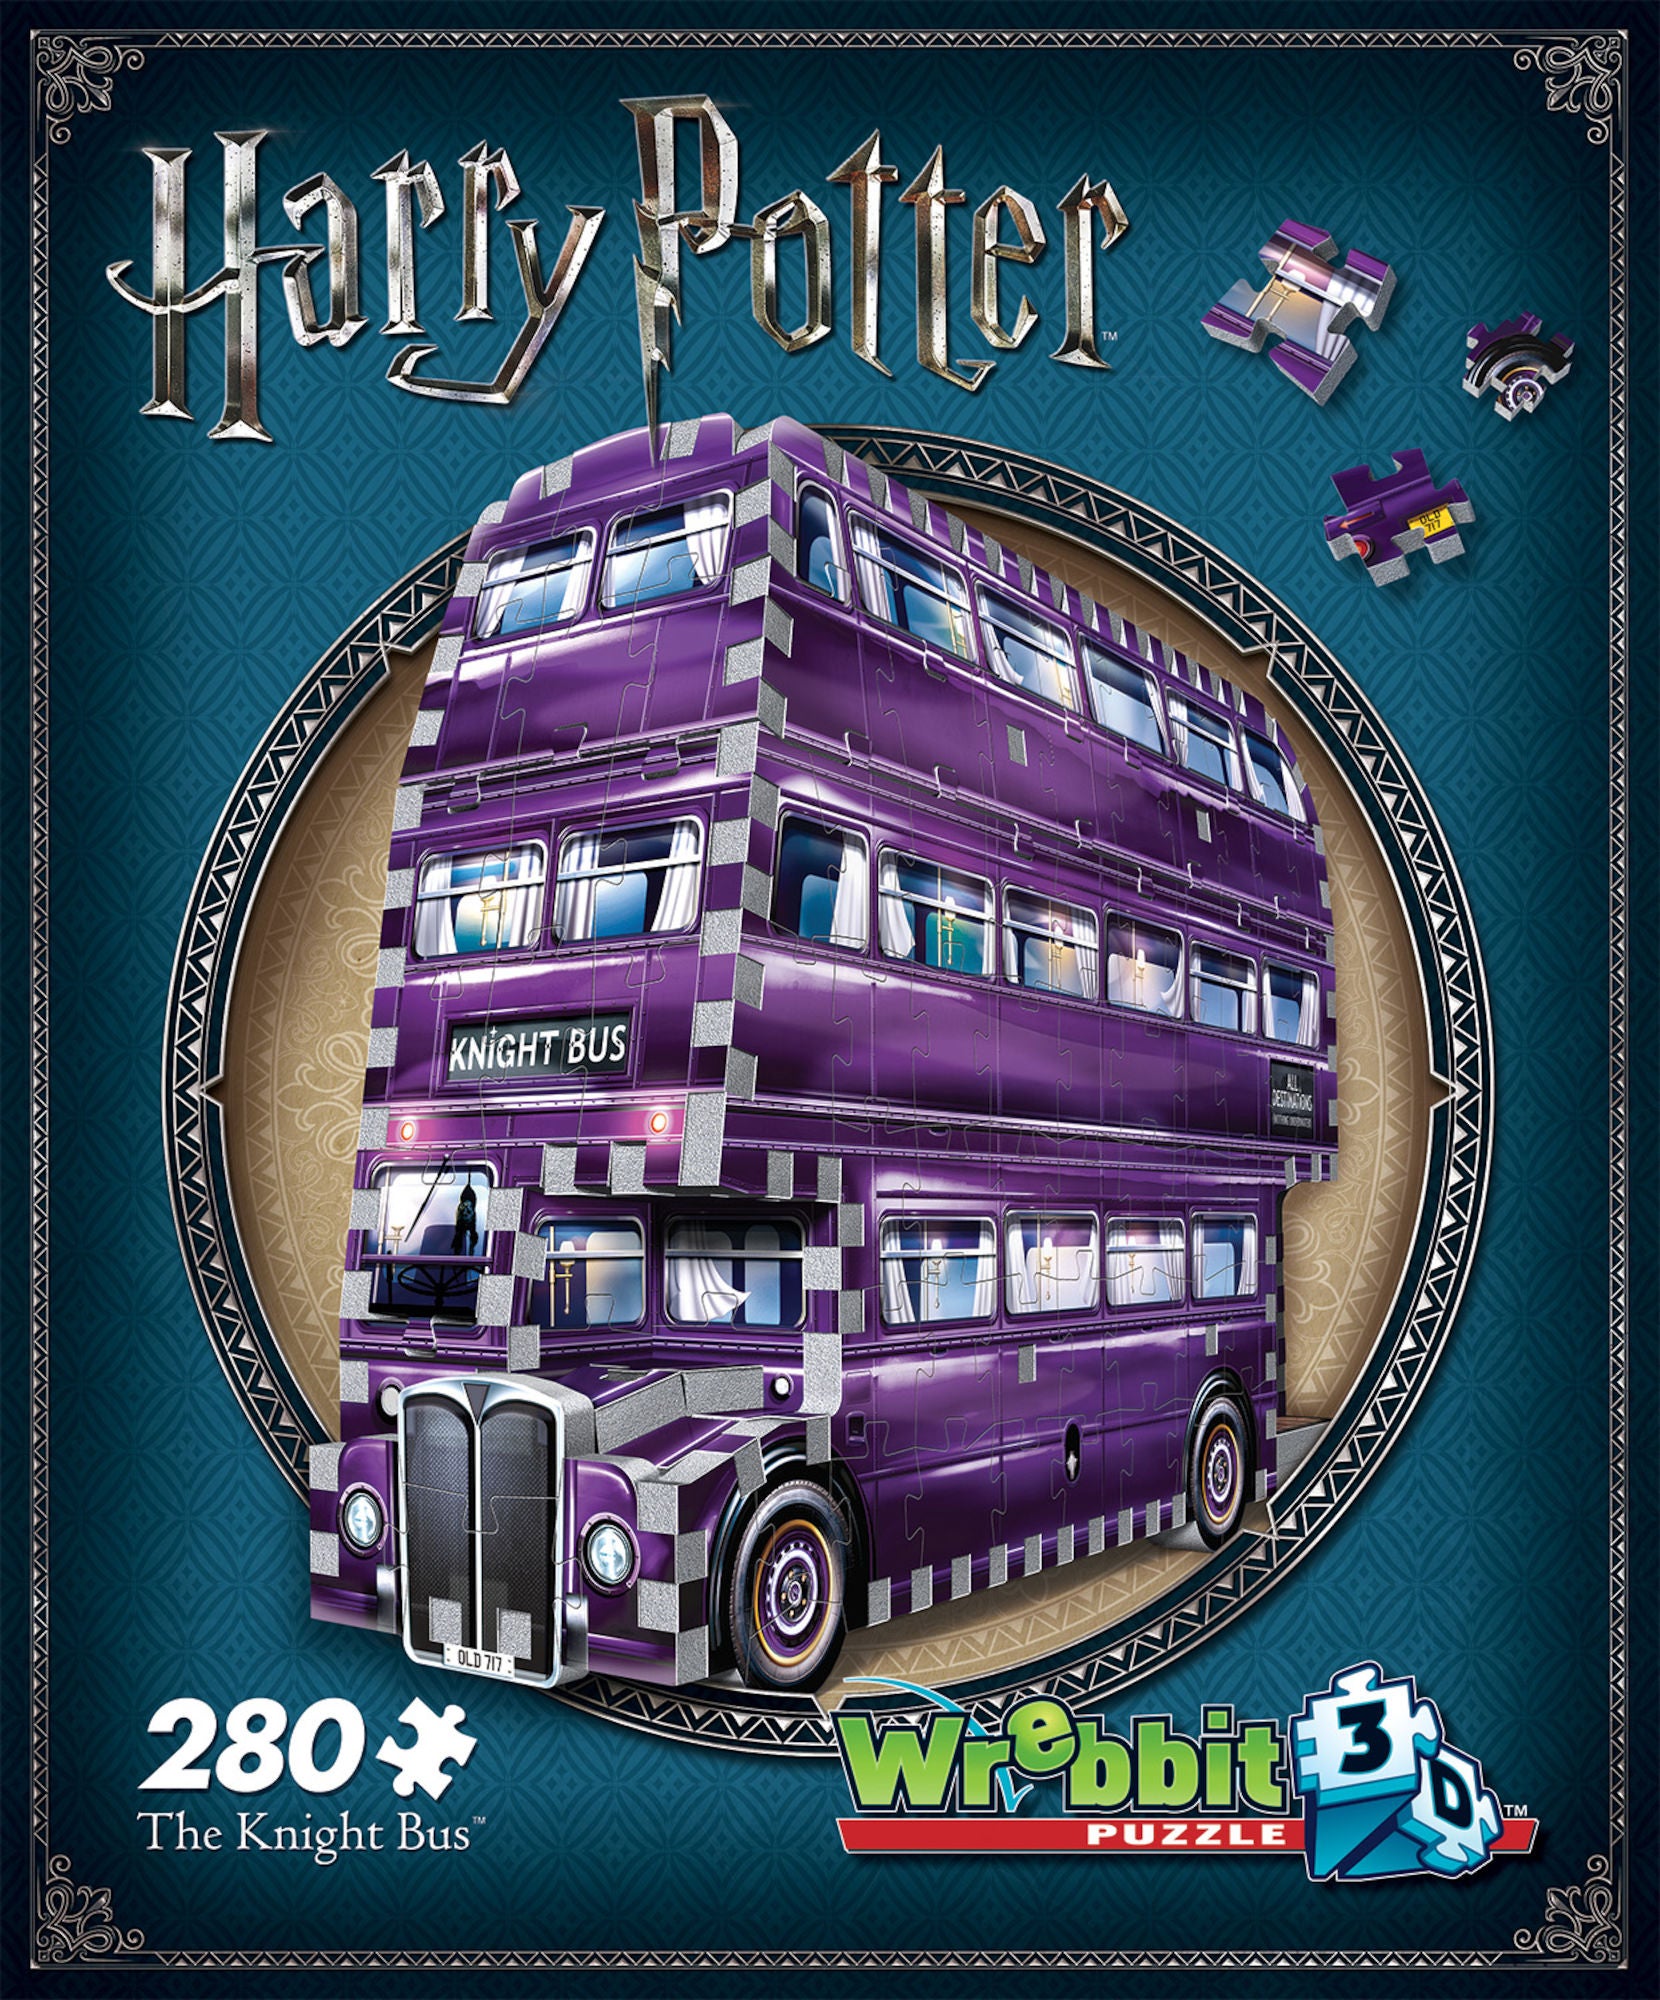 Harry Potter 3D-Puzzel Der Fahrende Ritter 280-teilig von Wrebbit